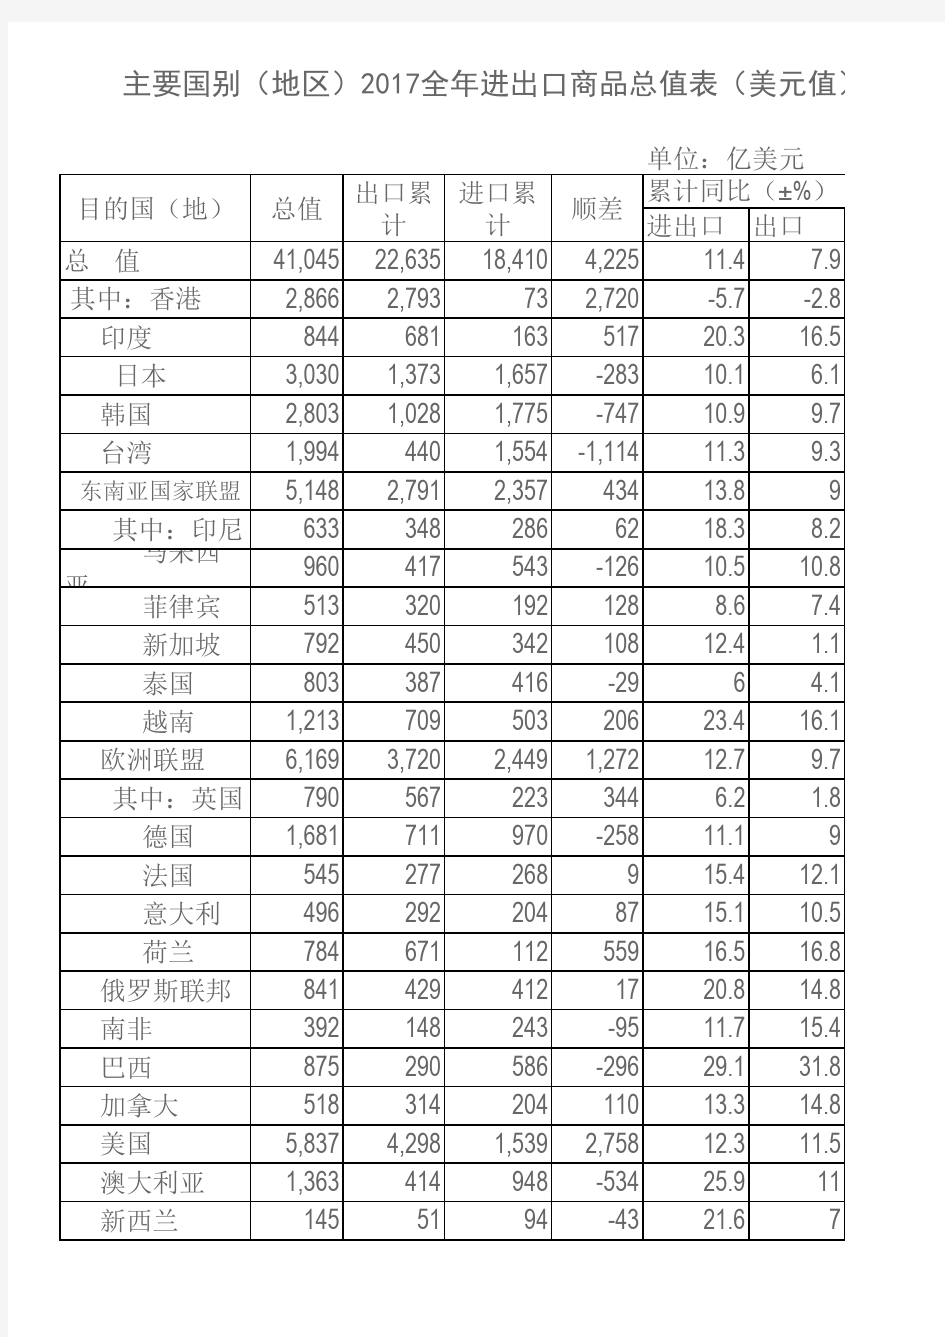 中国与世界主要国家、地区进出口总额统计表